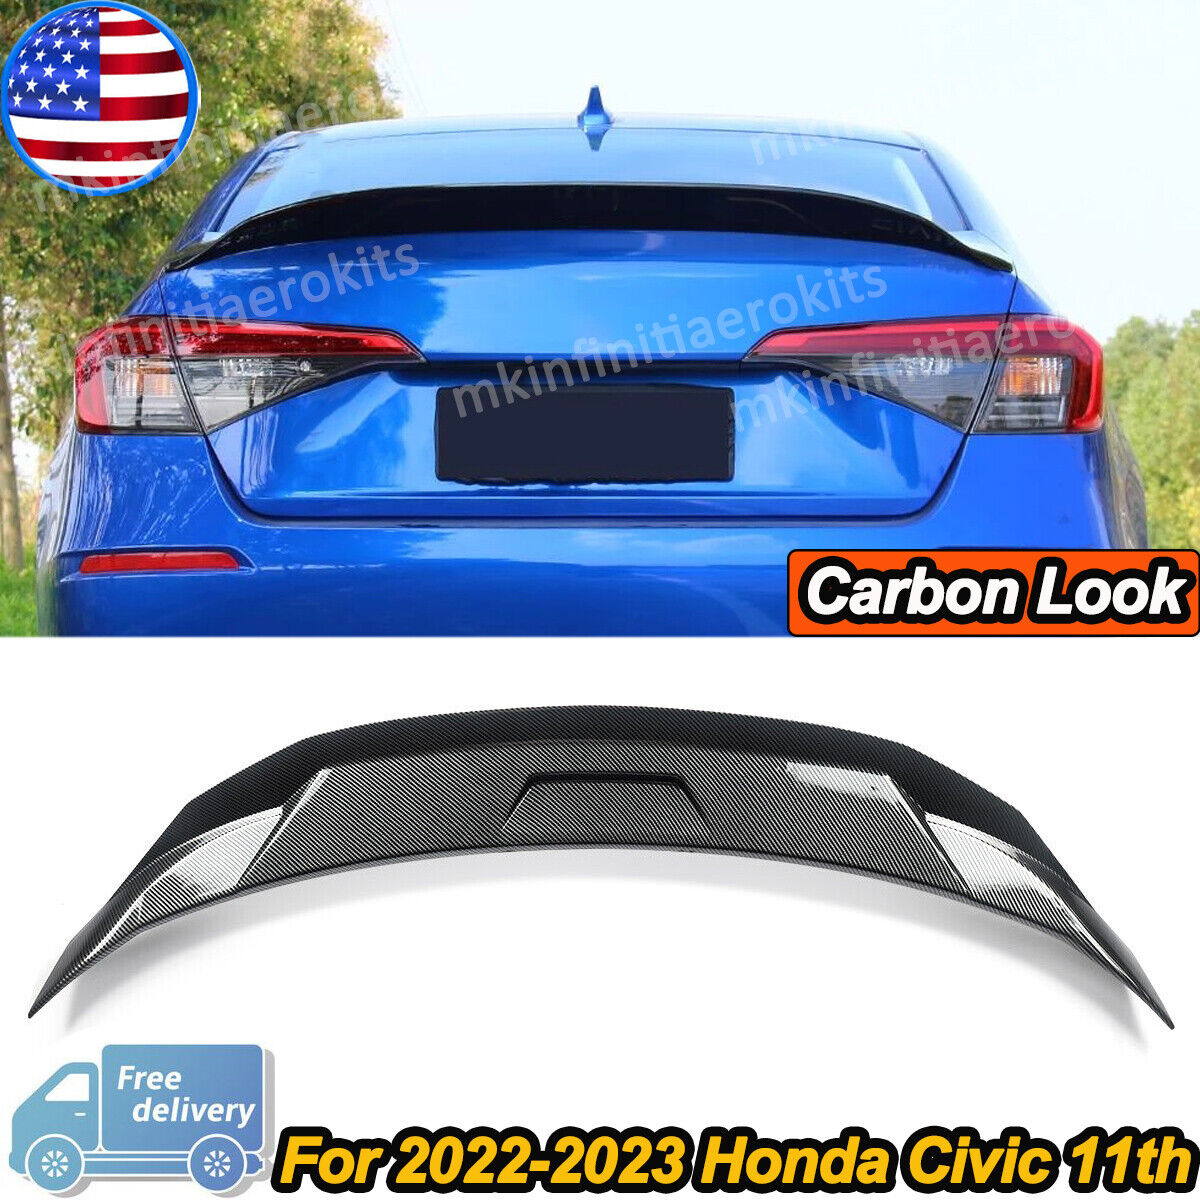 For Honda Civic Sedan 2020-on HighKick Duckbill Rear Trunk Spoiler Carbon Look